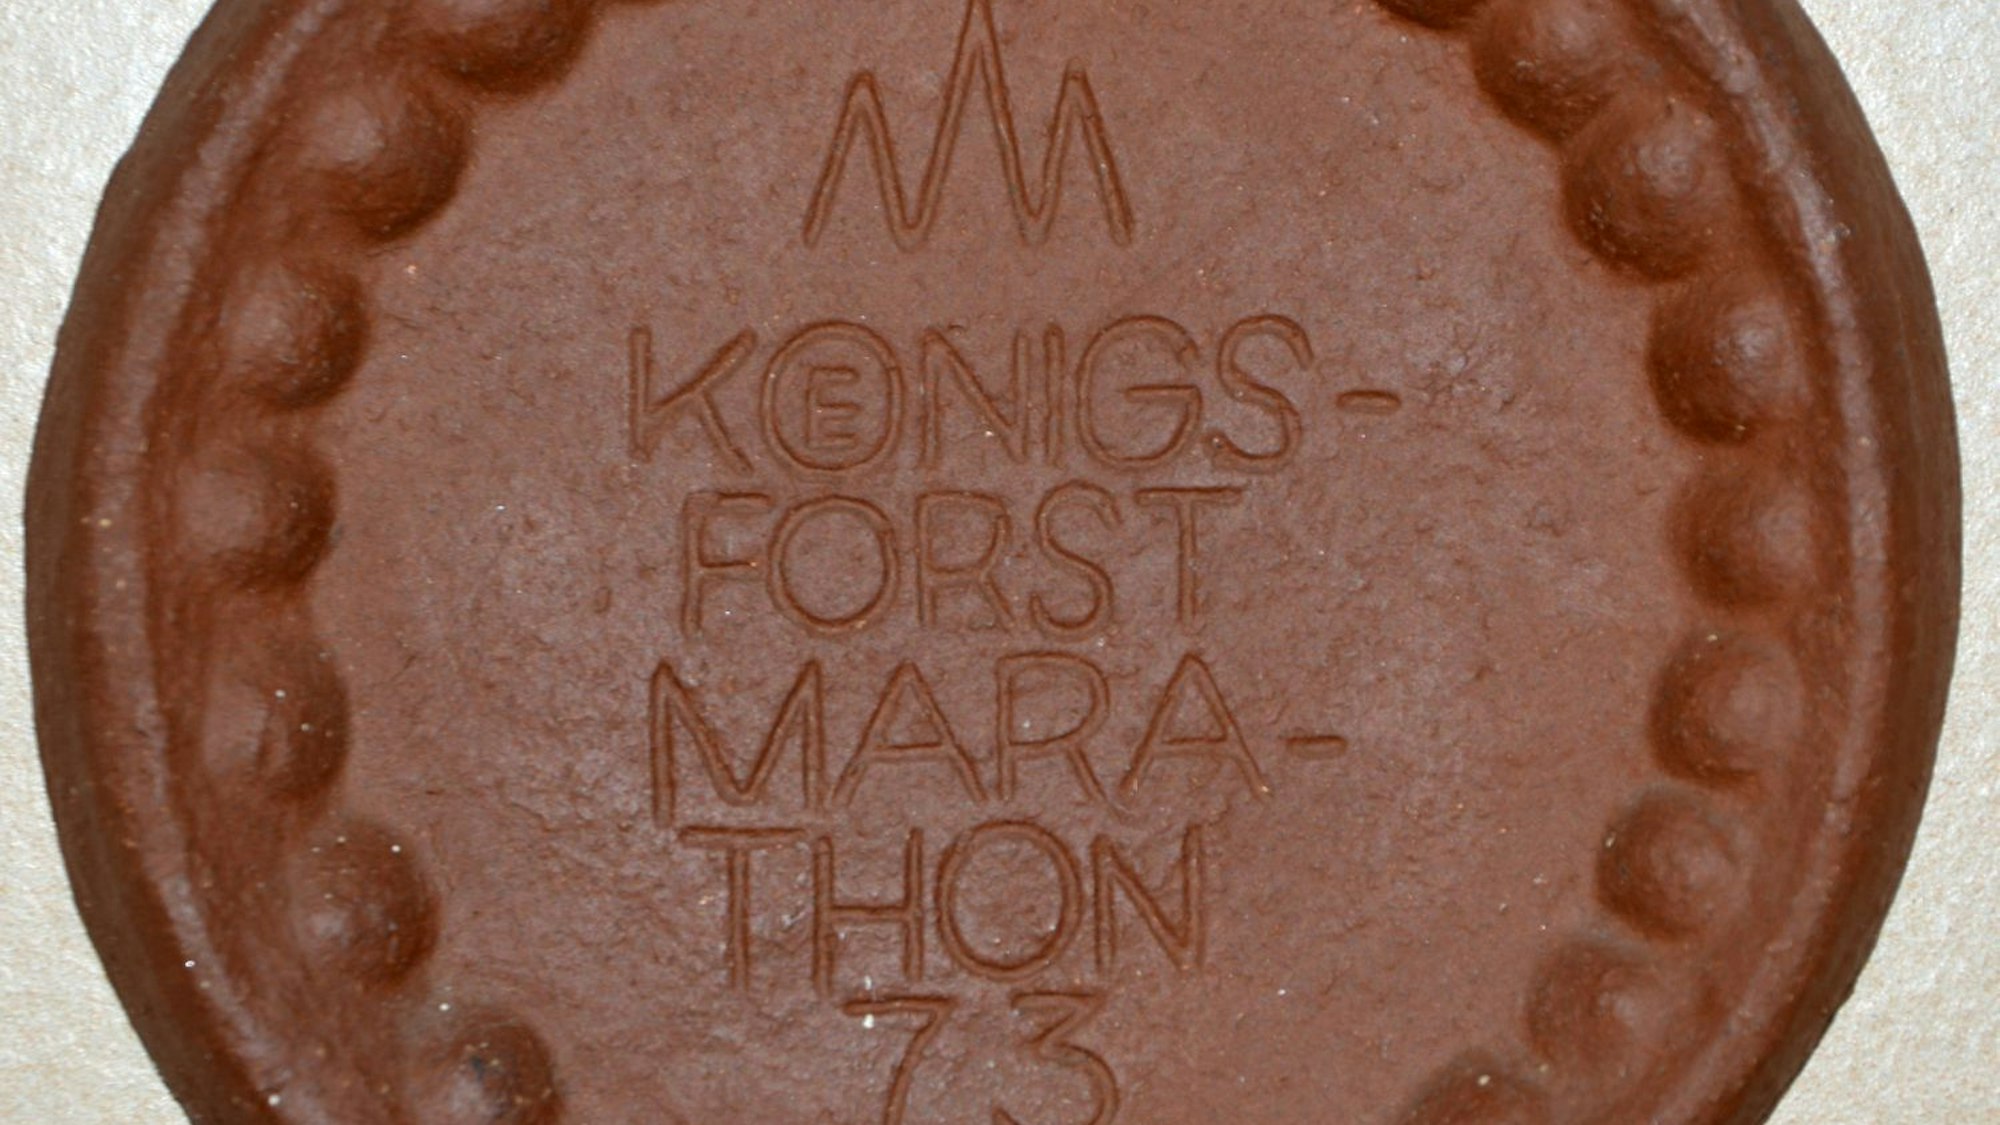 Die Keramikmedaille des Königsforst-Marathon 1973